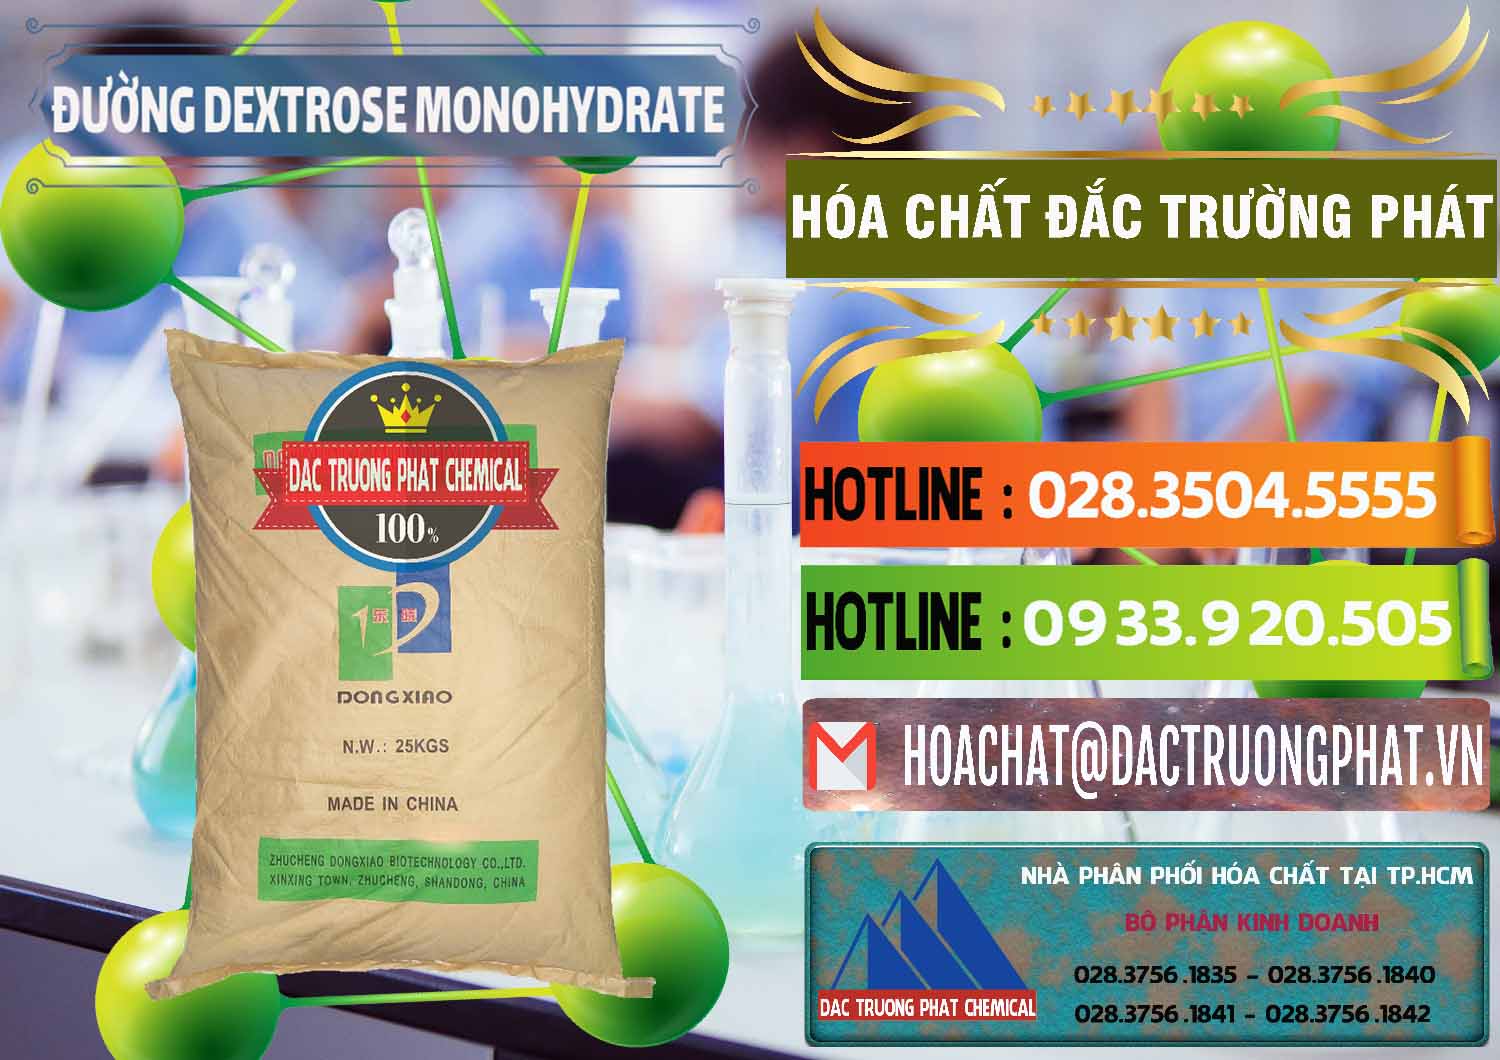 Nơi cung cấp & bán Đường Dextrose Monohydrate Food Grade Dongxiao Trung Quốc China - 0063 - Phân phối và cung ứng hóa chất tại TP.HCM - cungcaphoachat.com.vn